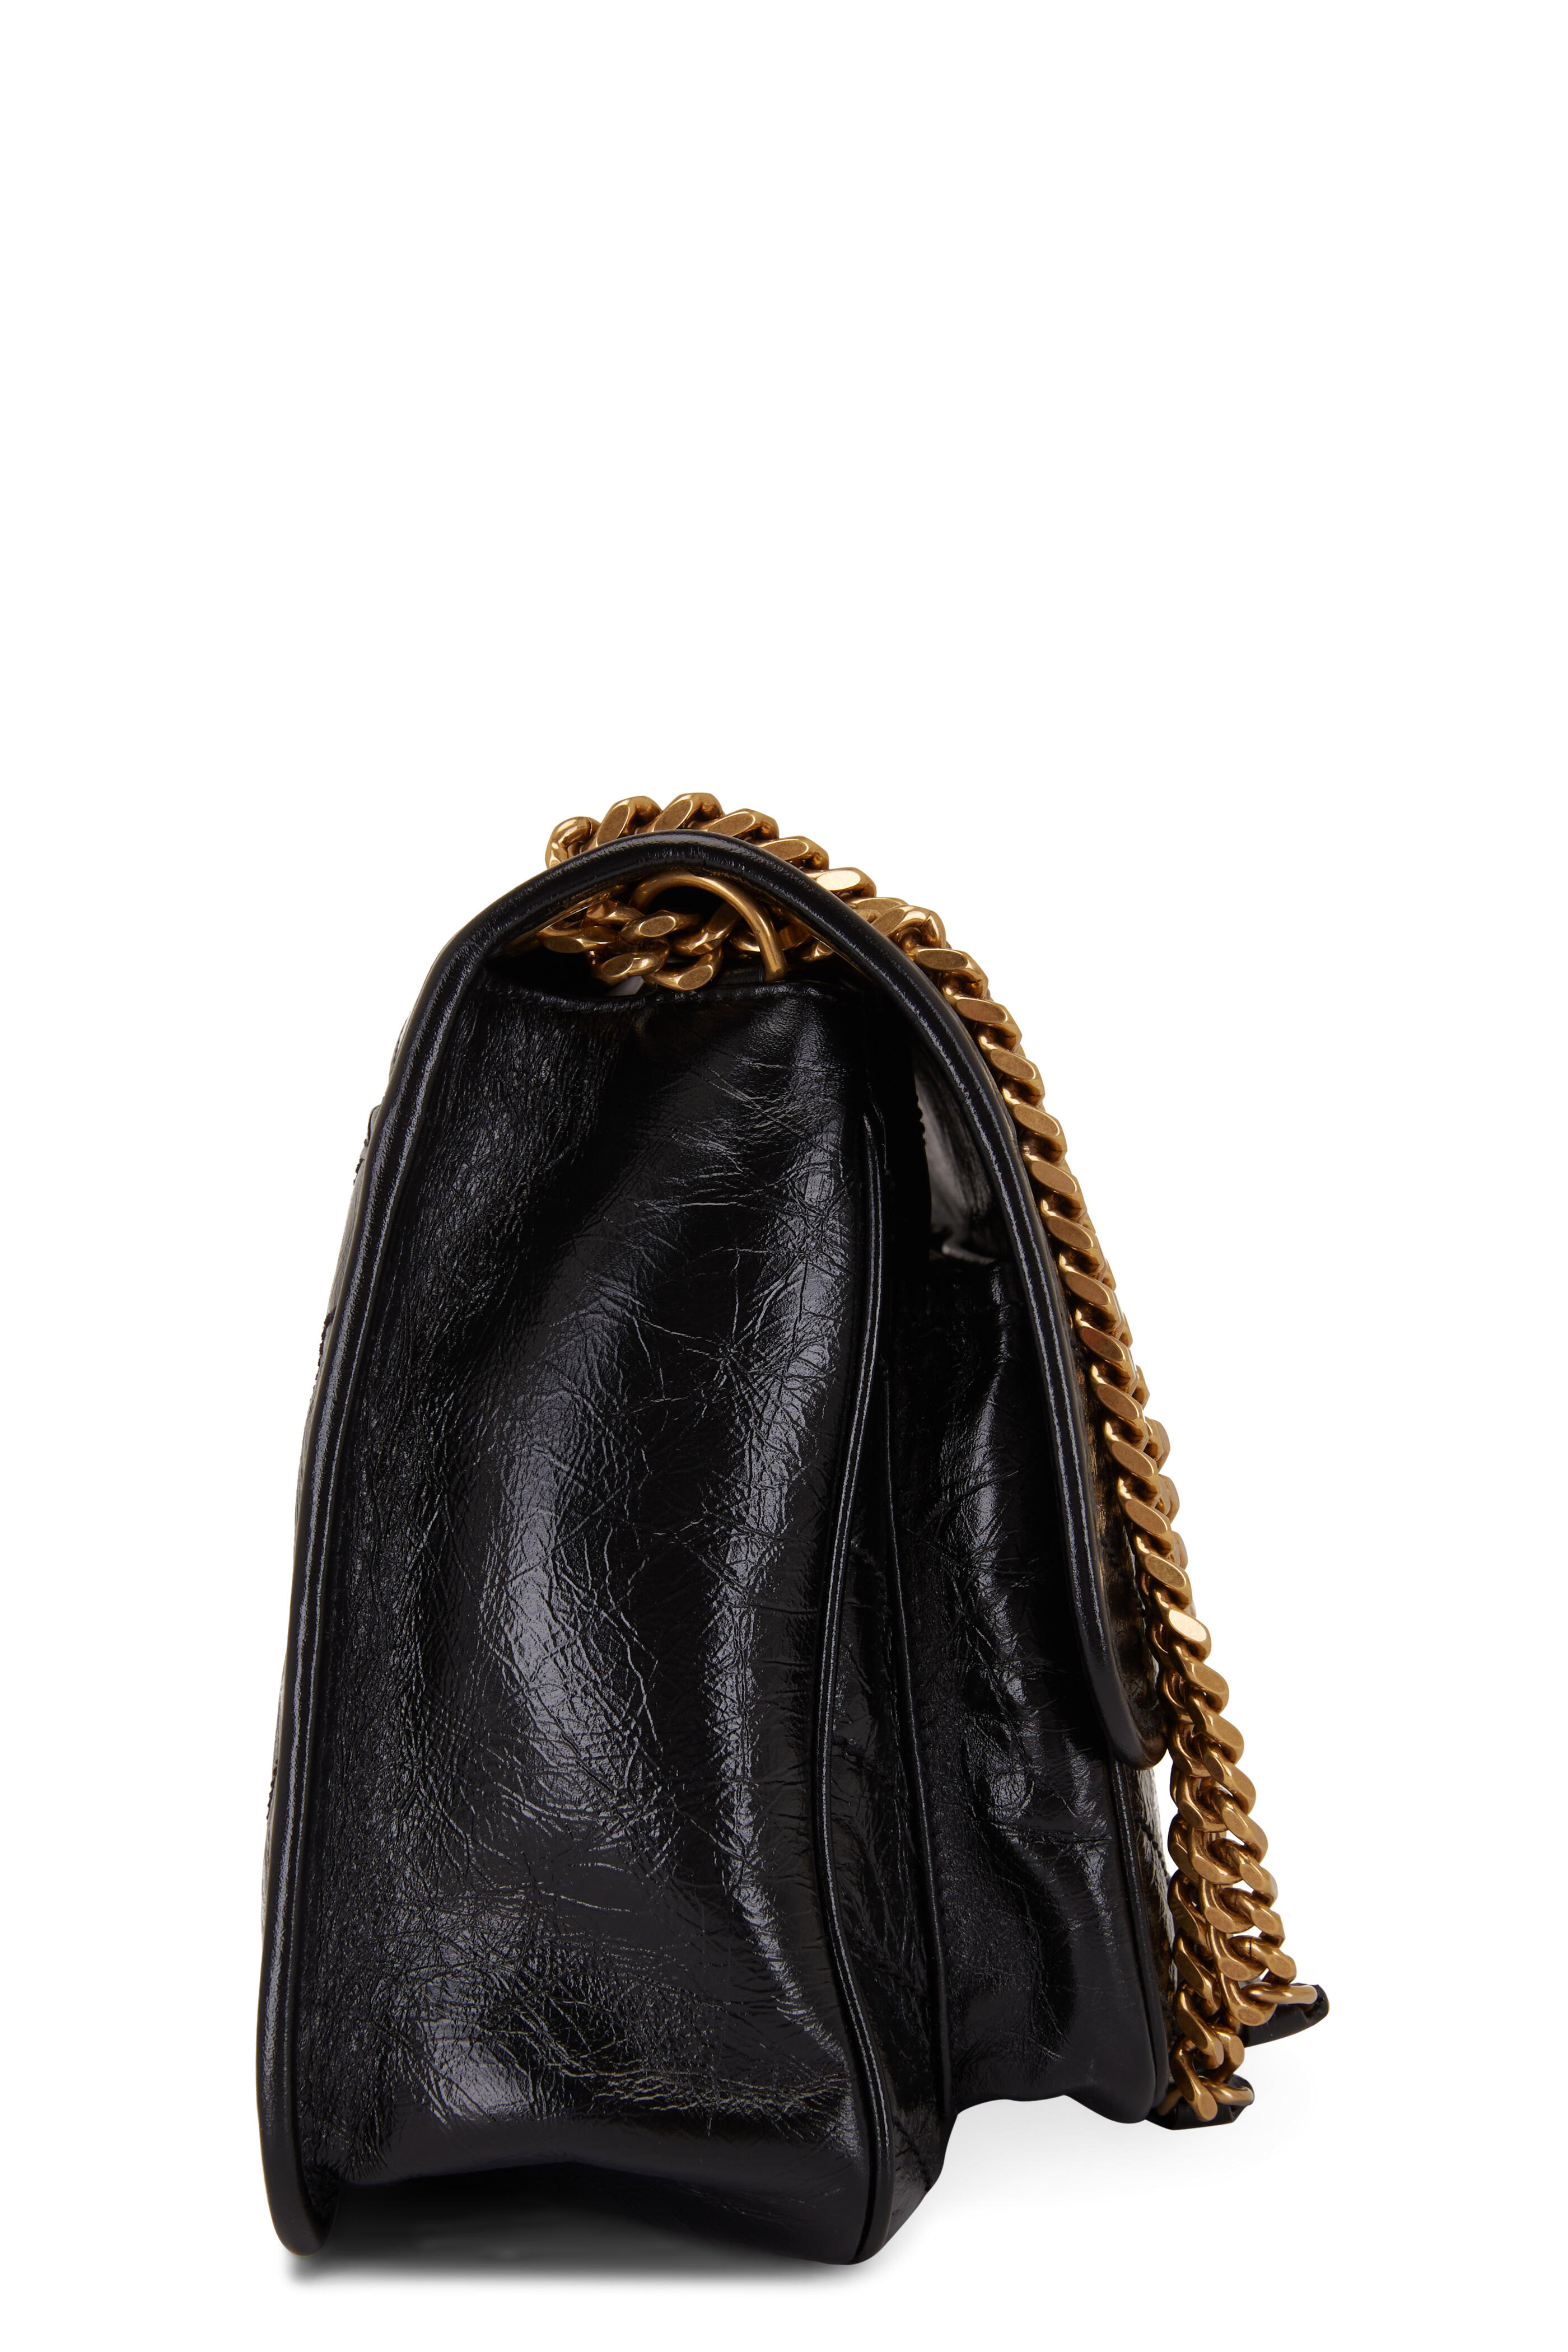 Saint Laurent Niki Lambskin in GHW, Luxury, Bags & Wallets on